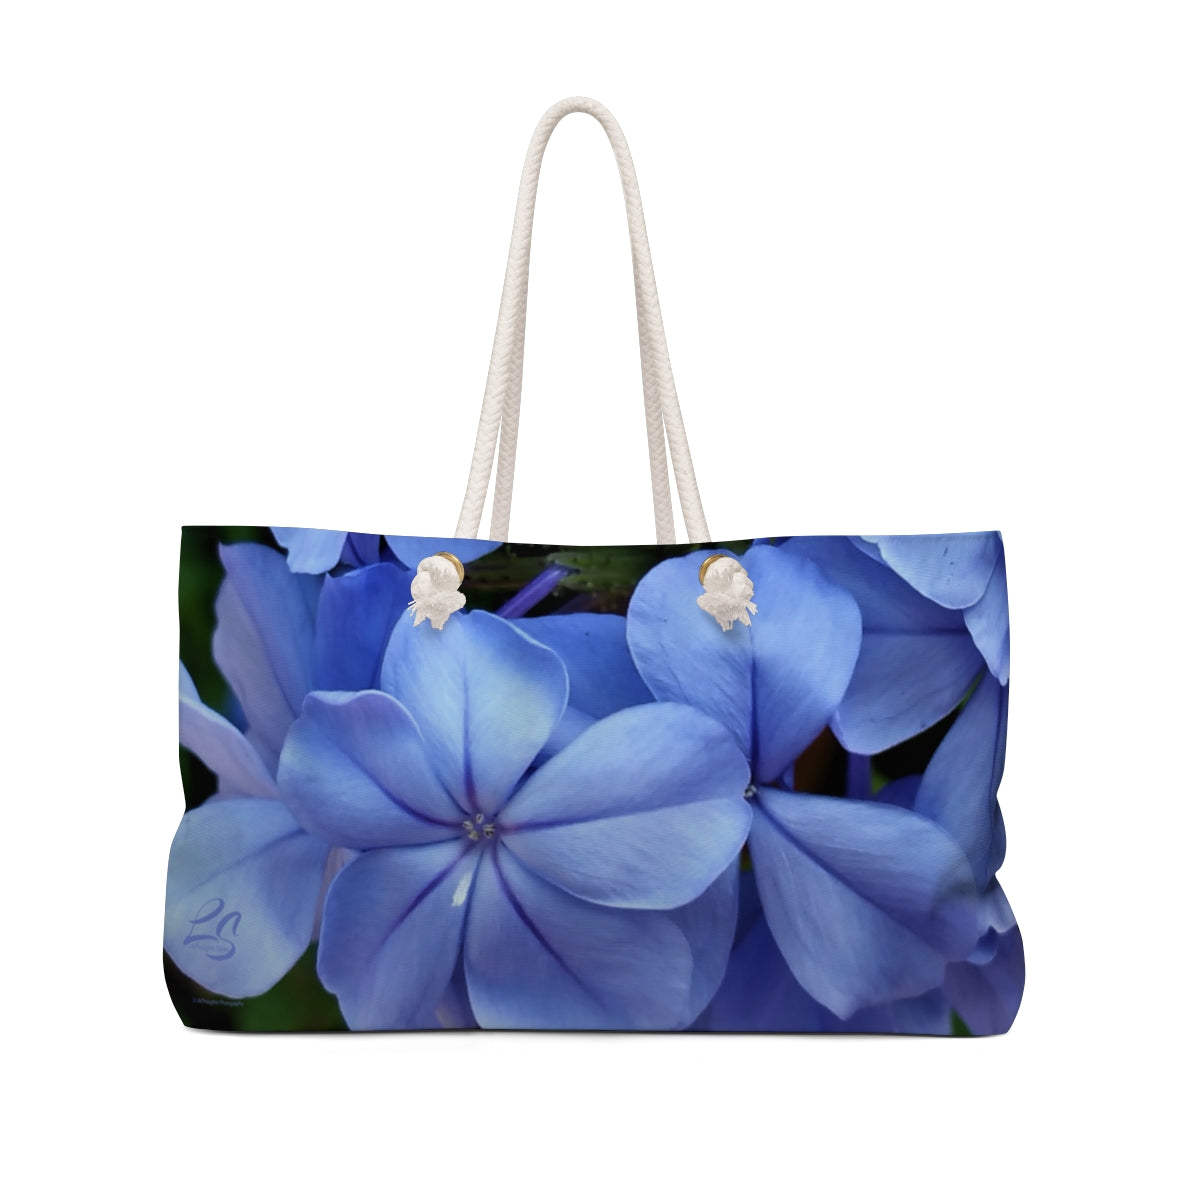 Blue Floral Weekender Bag